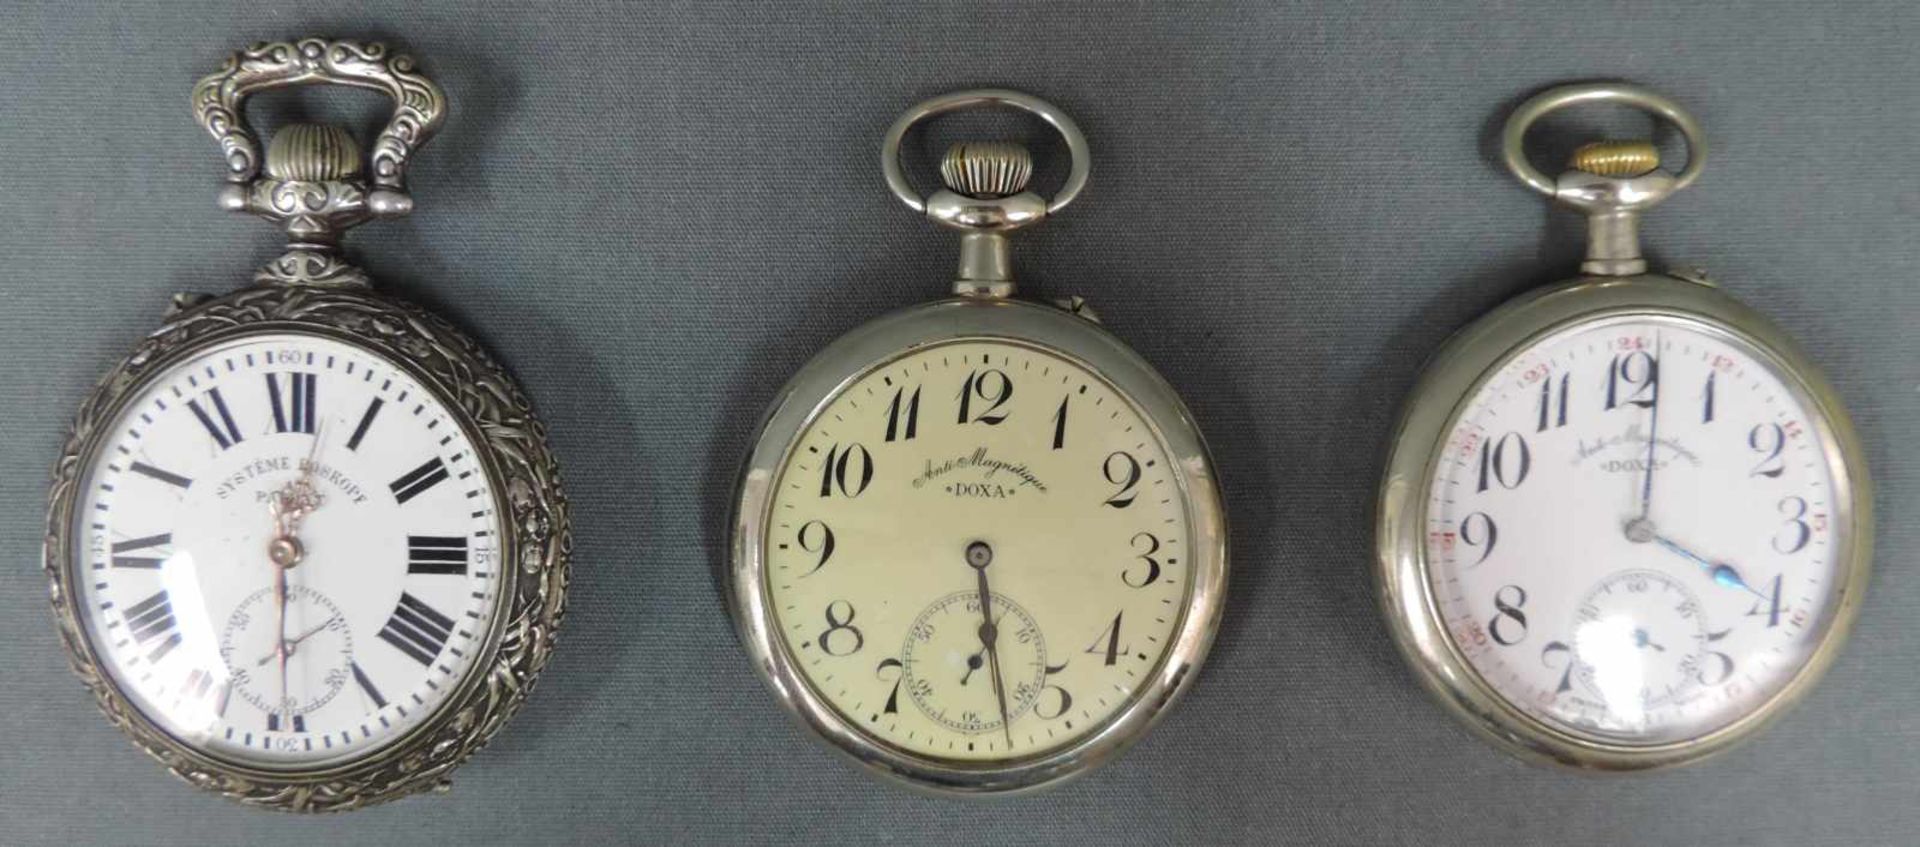 Drei Taschenuhren. Wohl 19. Jahrhundert 3 Pocket watches.